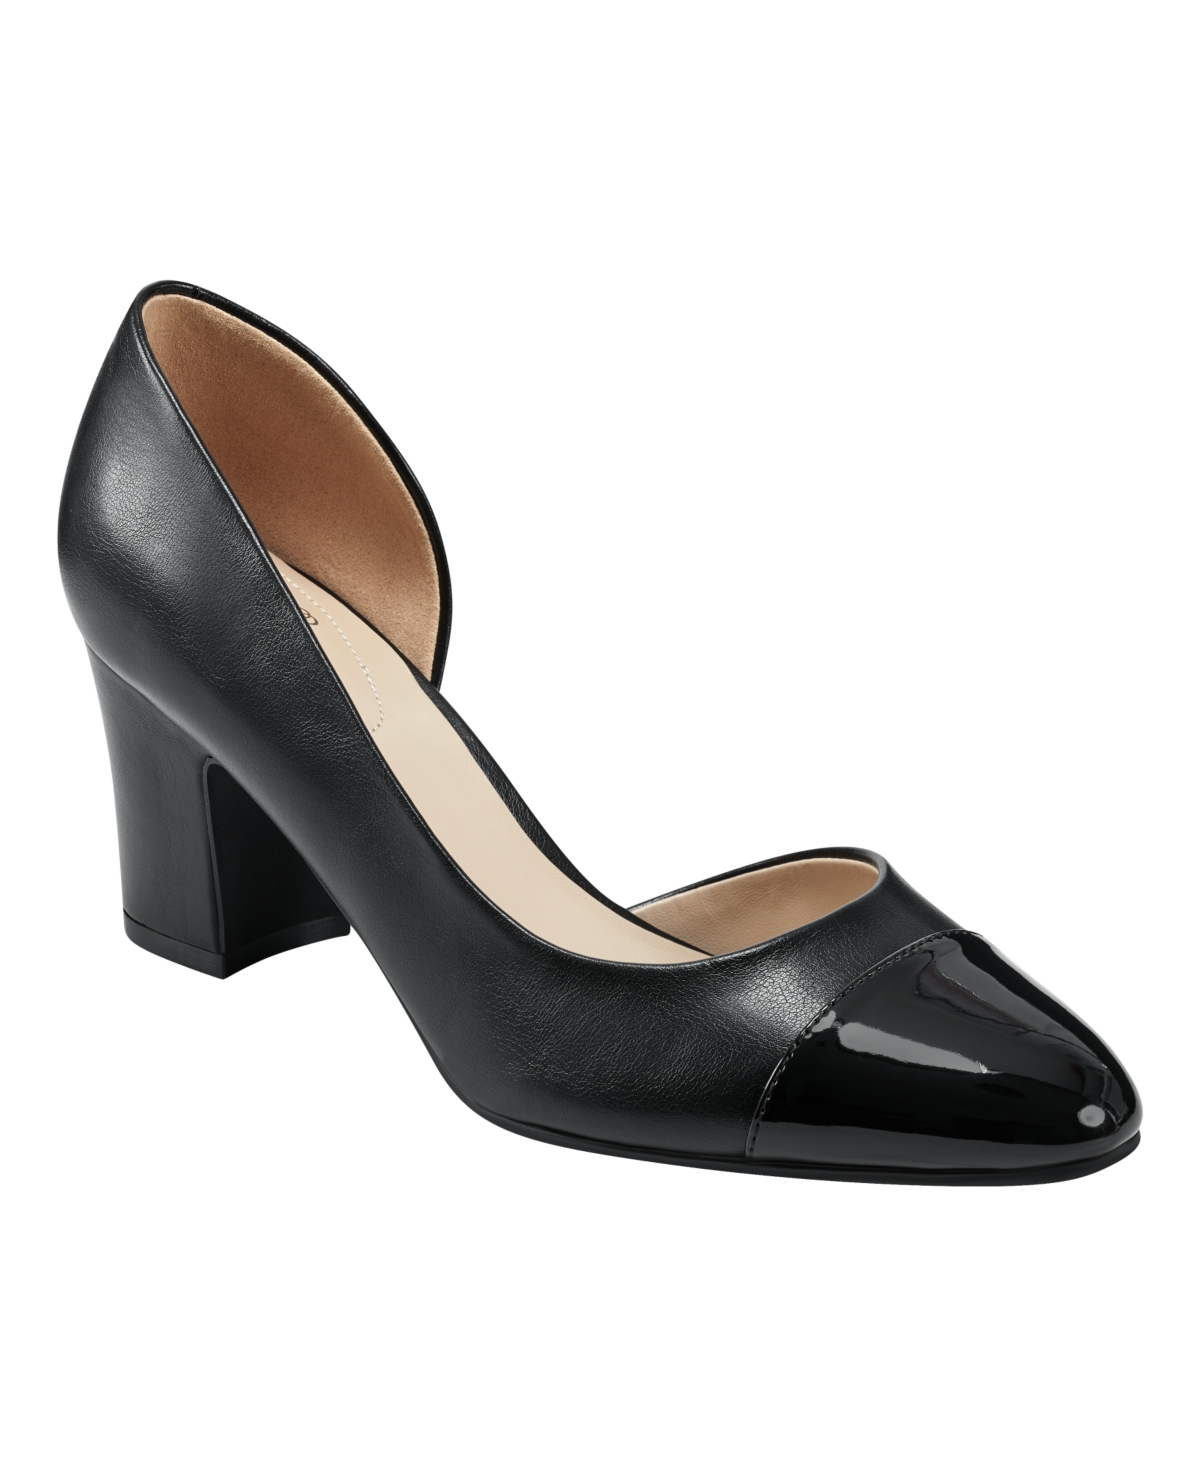 Women's Laynier Almond Toe Side D'Orsay Block Heel Pumps - Black Multi